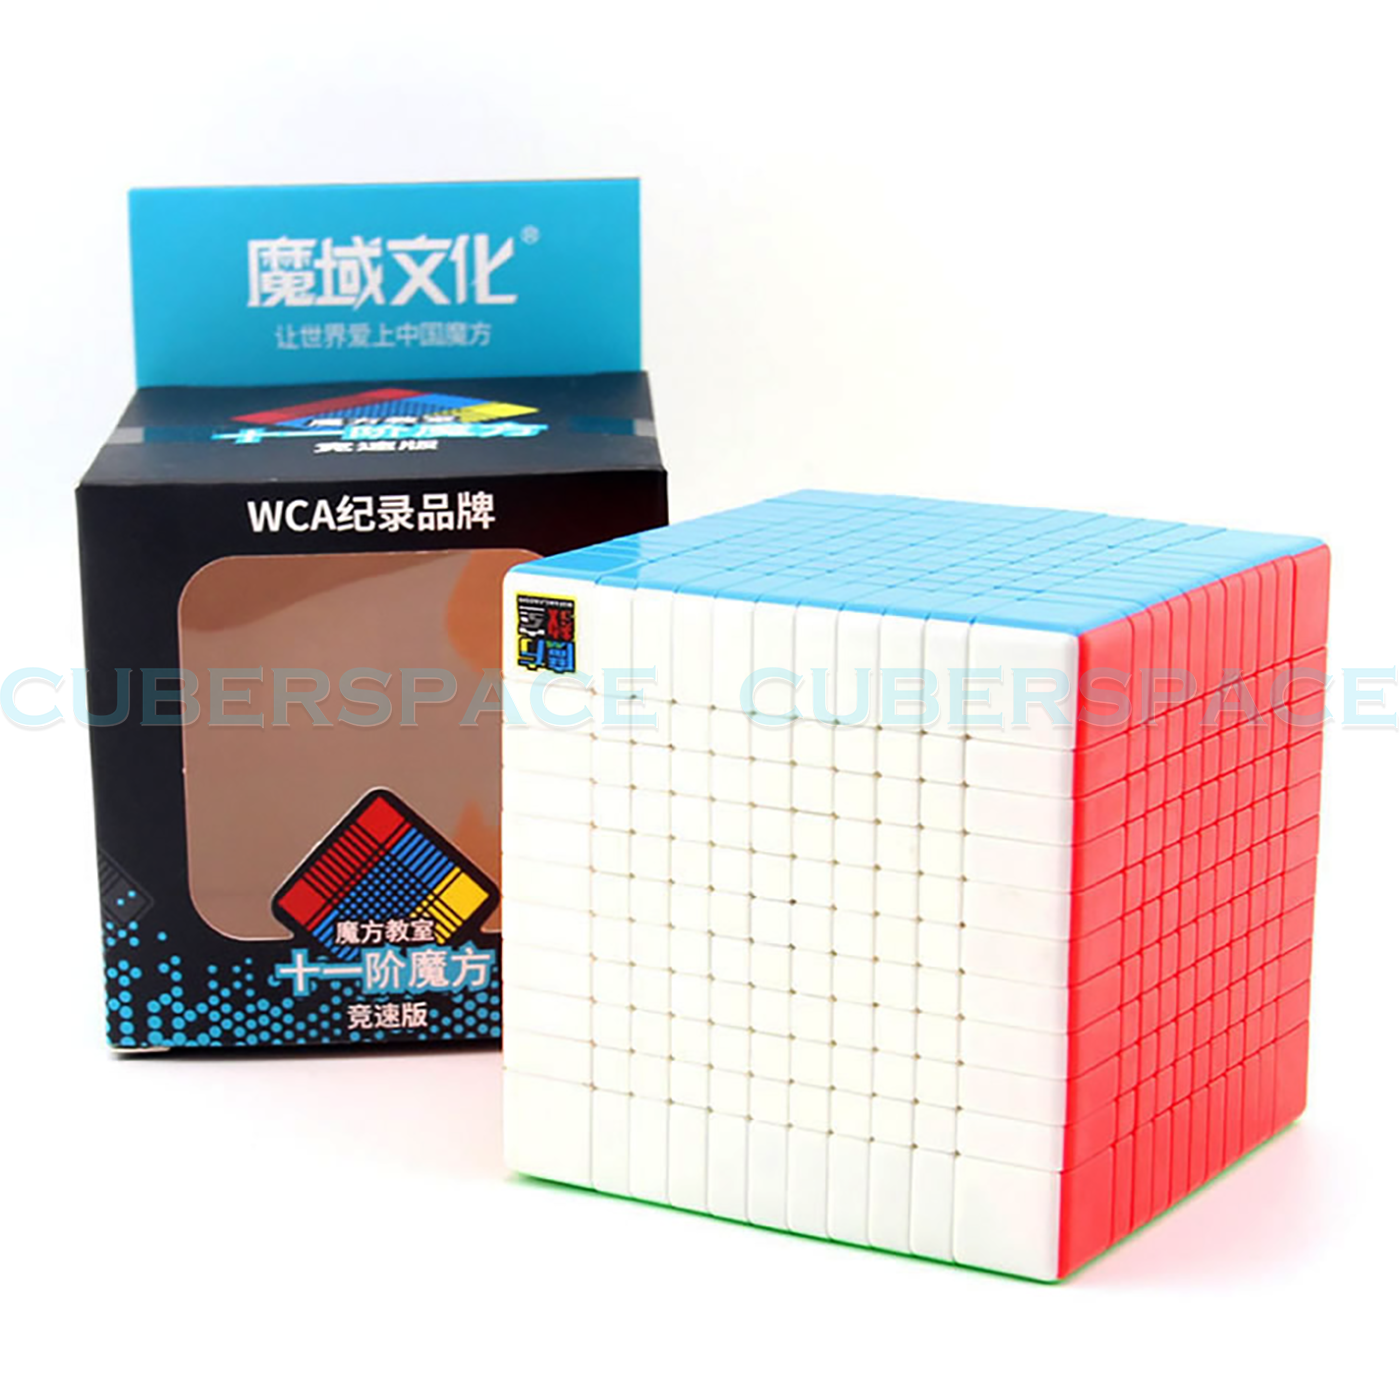 Mofang Jiaoshi 11x11 speedcube